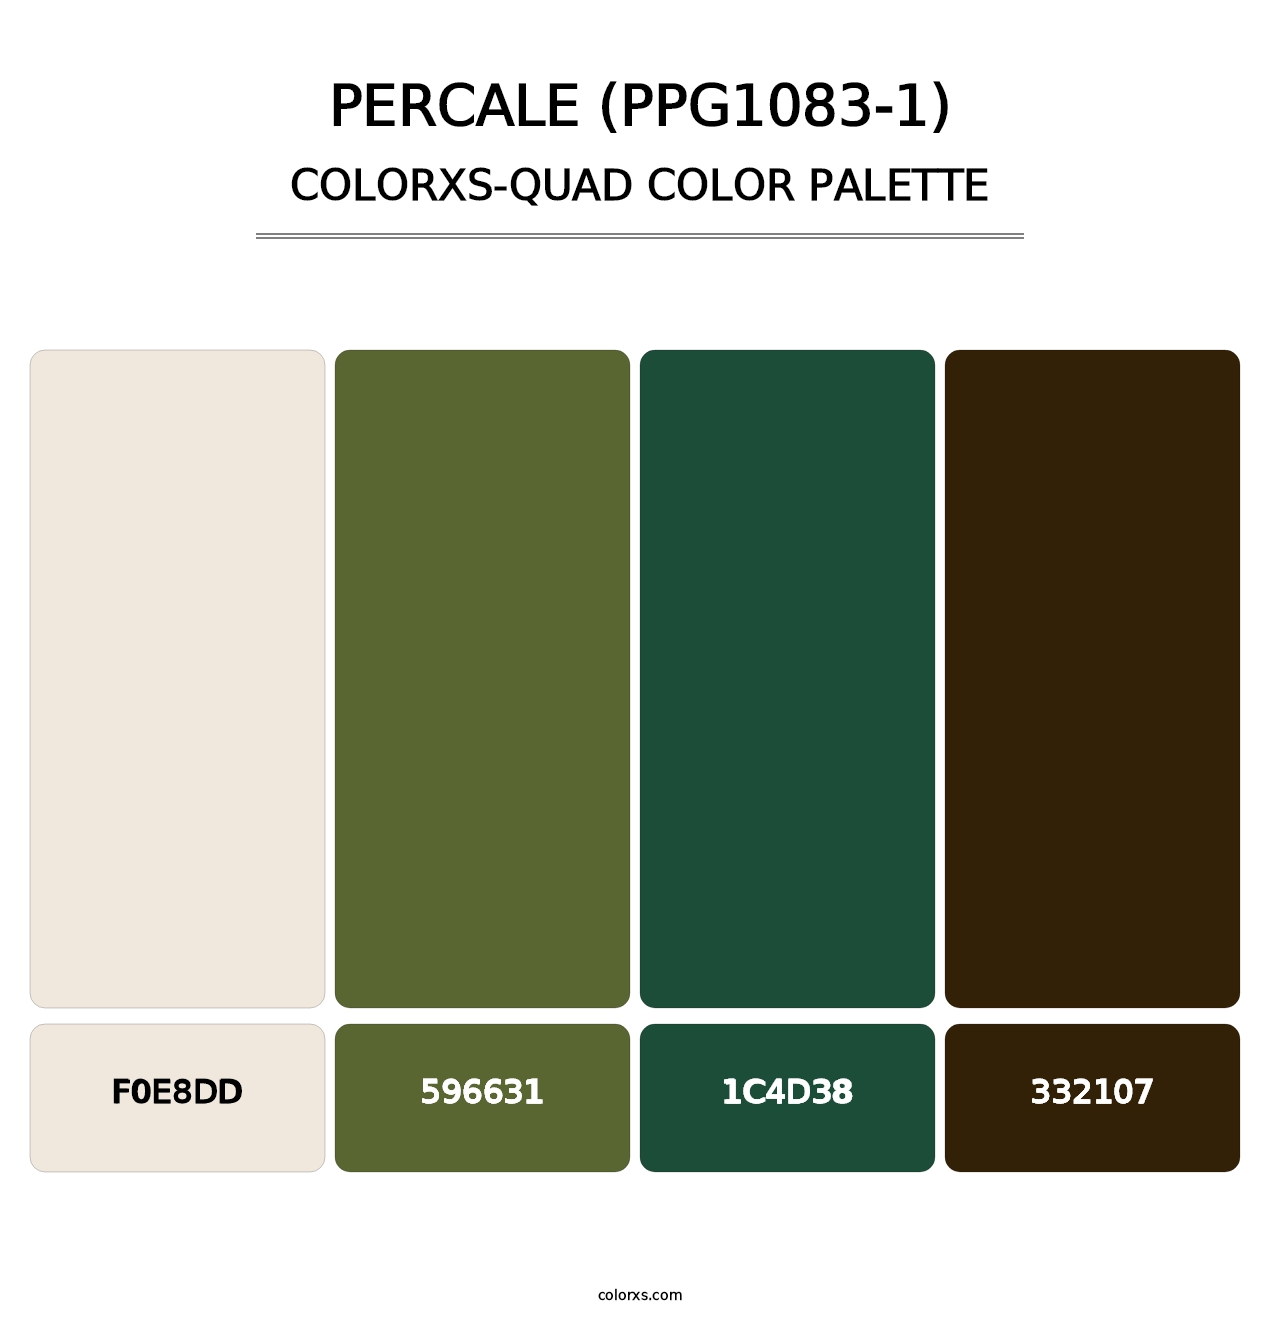 Percale (PPG1083-1) - Colorxs Quad Palette